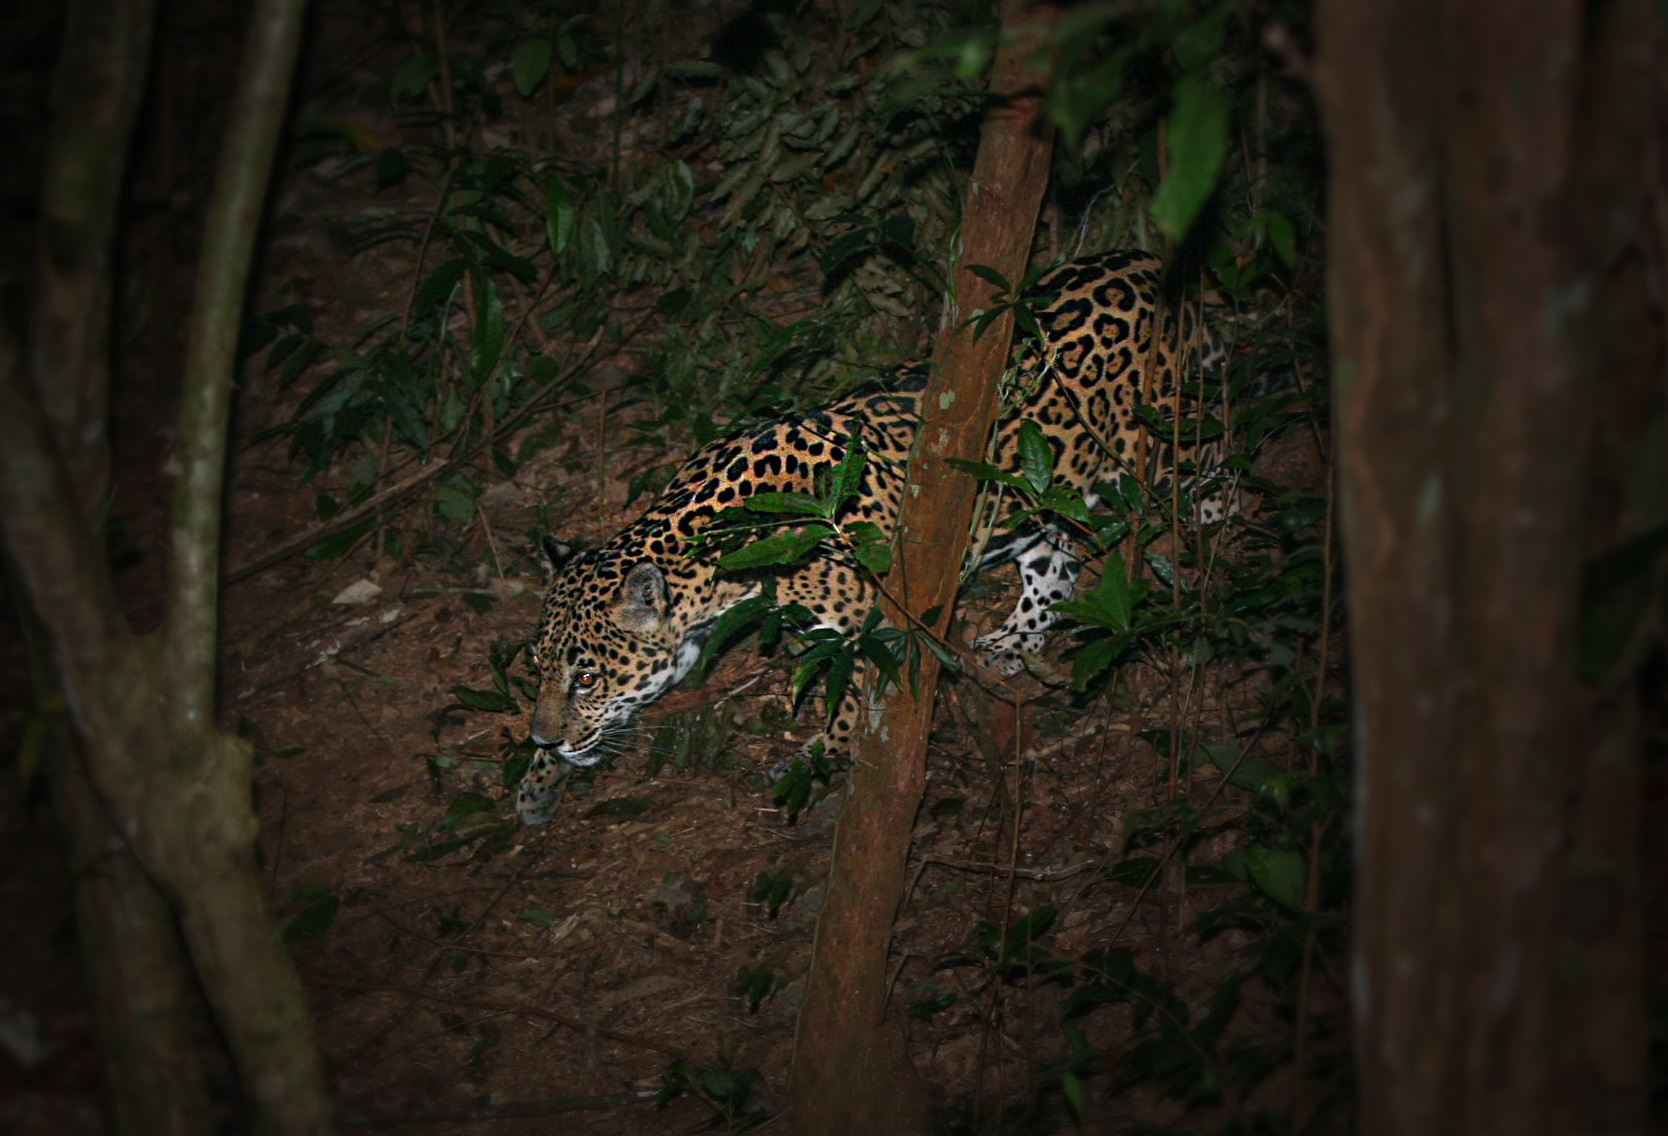 Esperanza the jaguar